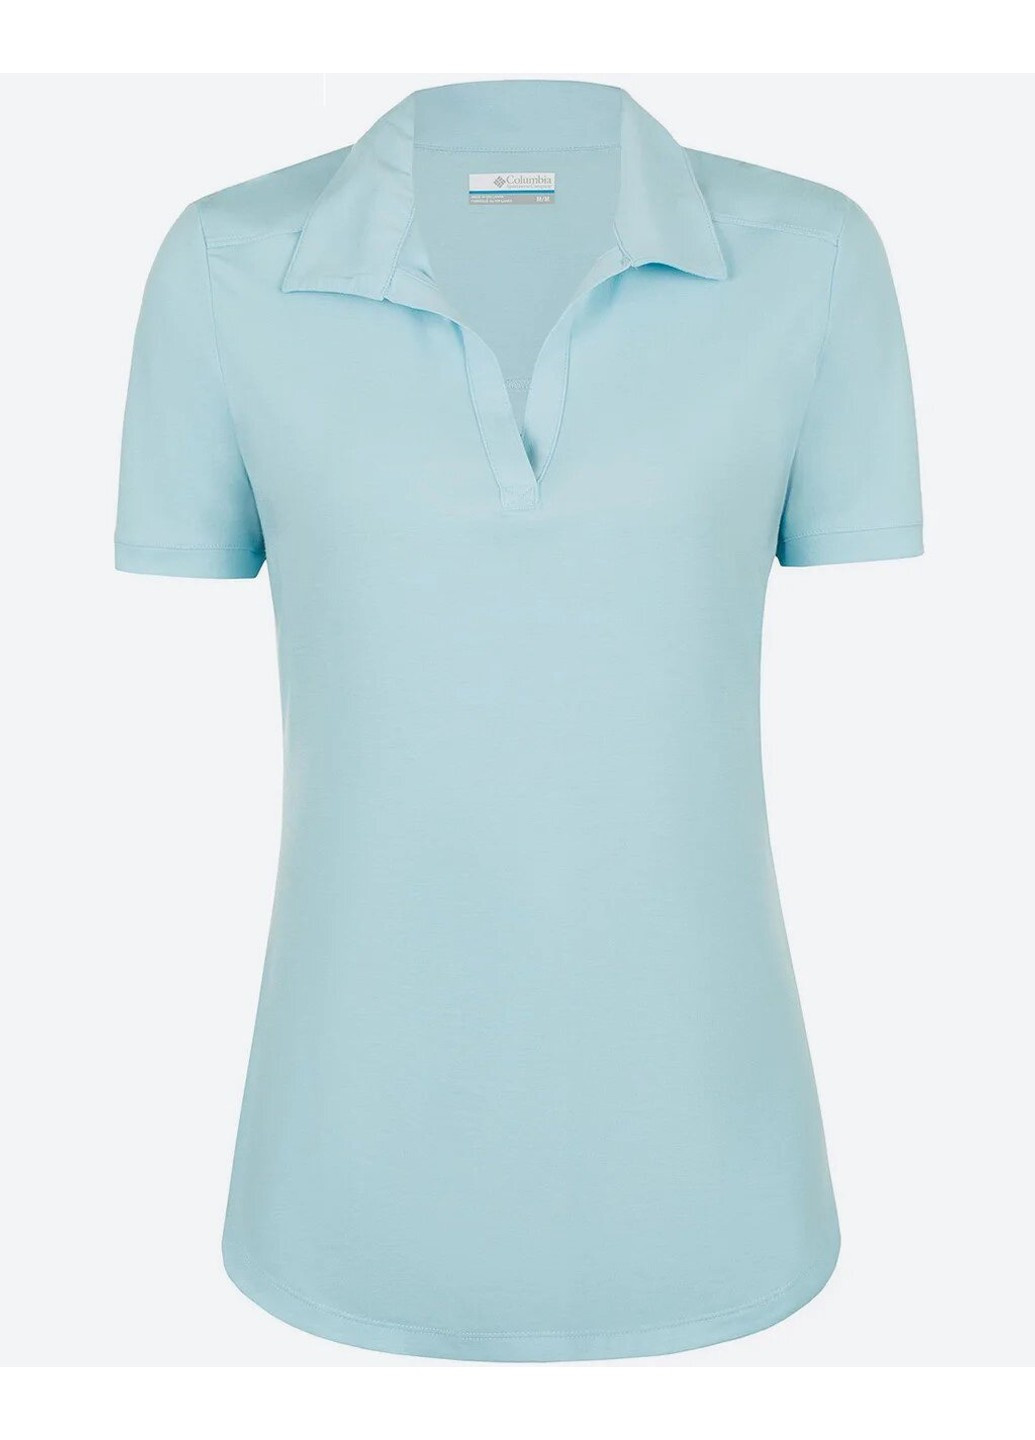 Голубой женская футболка-1885581-490 xl рубашка-поло женское essential elements голубой р.xl Columbia